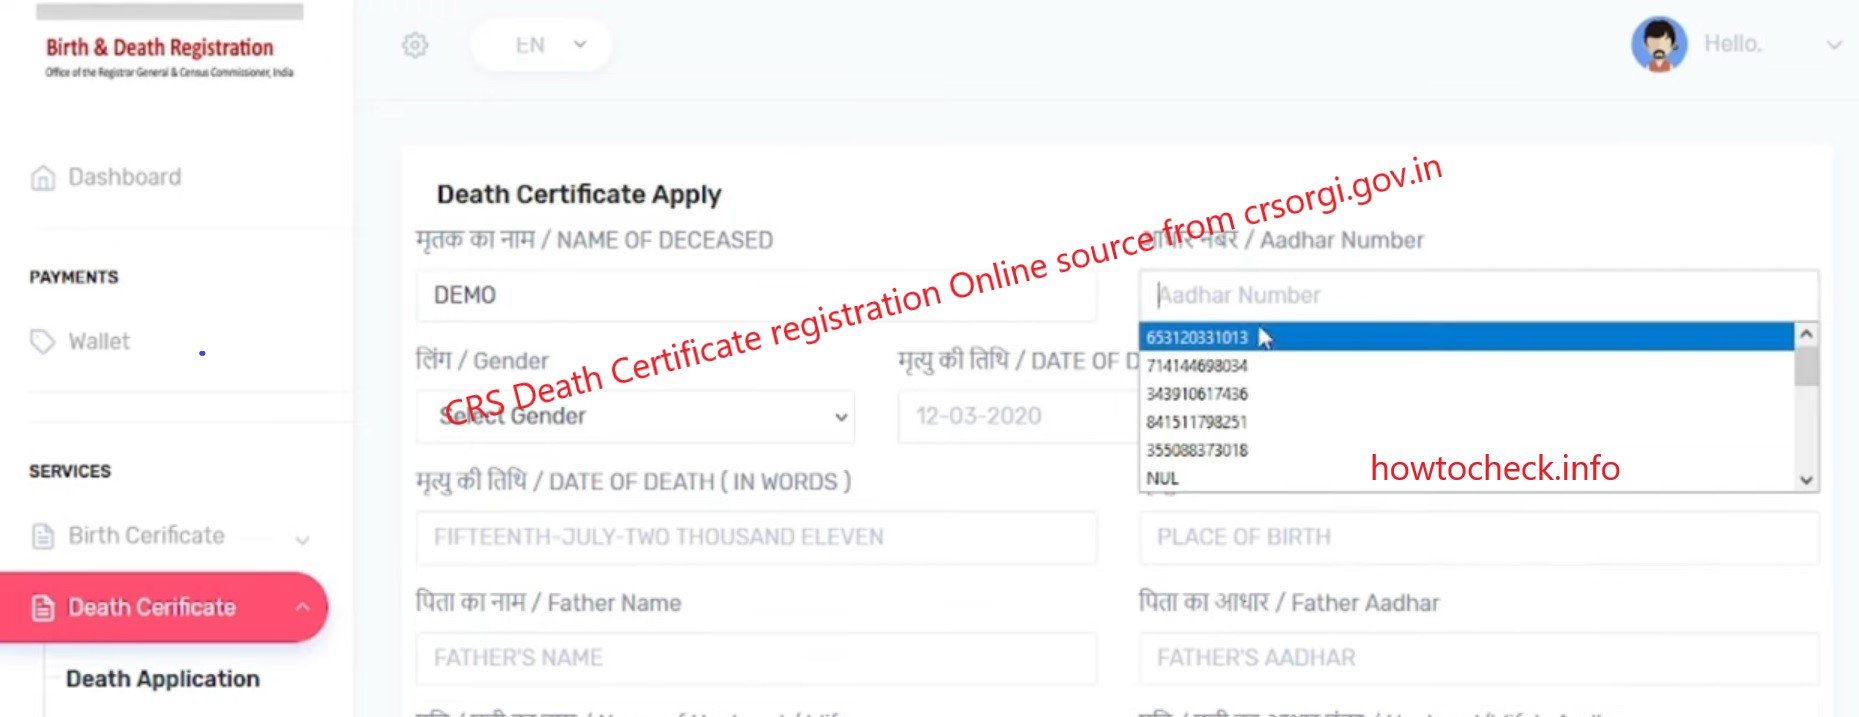 CRS Death Certificate registration Online source from crsorgi.gov.in